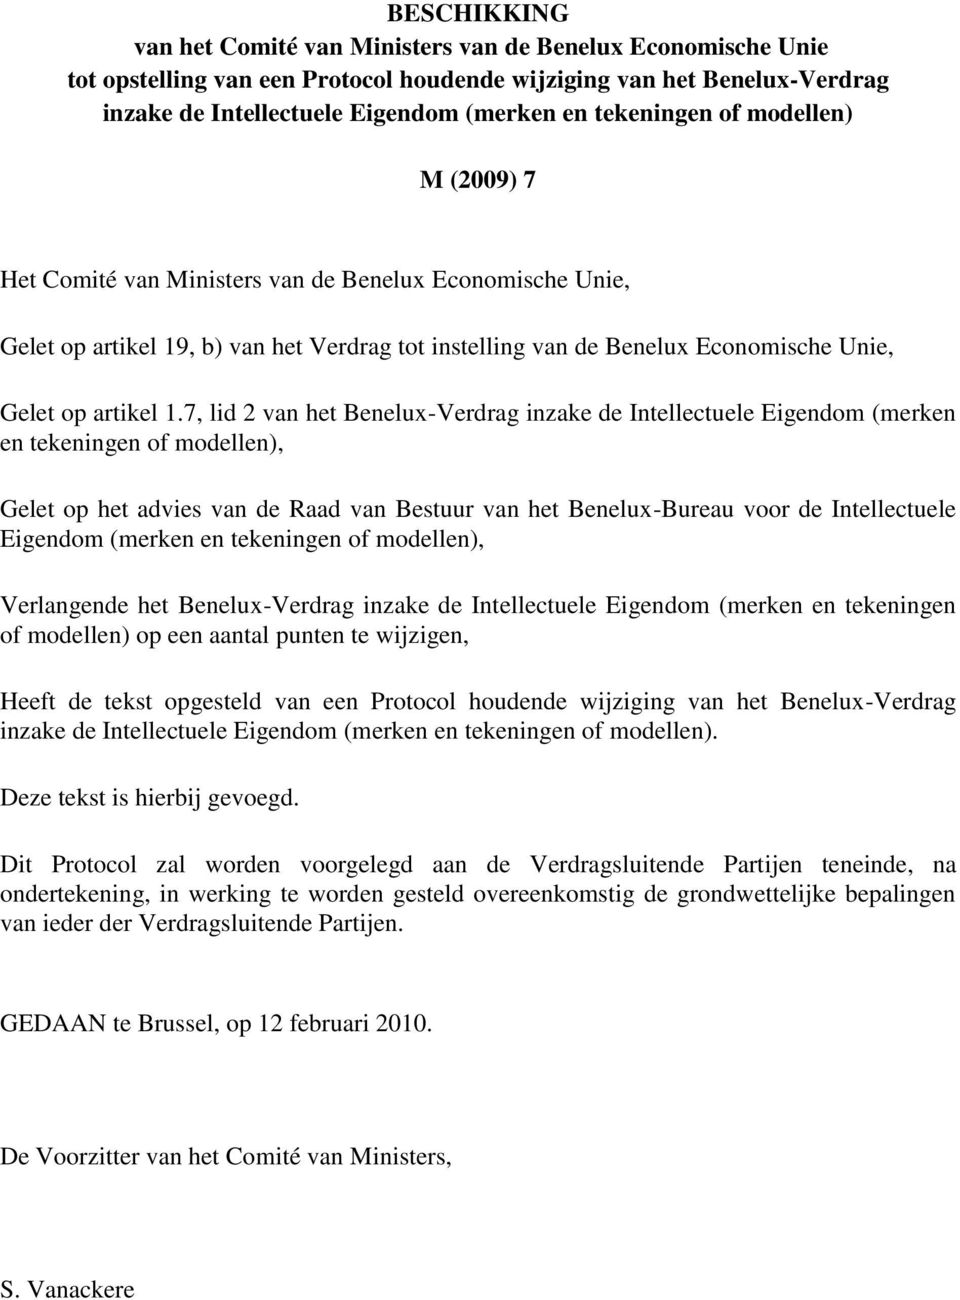 7, lid 2 van het Benelux-Verdrag inzake de Intellectuele Eigendom (merken en tekeningen of modellen), Gelet op het advies van de Raad van Bestuur van het Benelux-Bureau voor de Intellectuele Eigendom